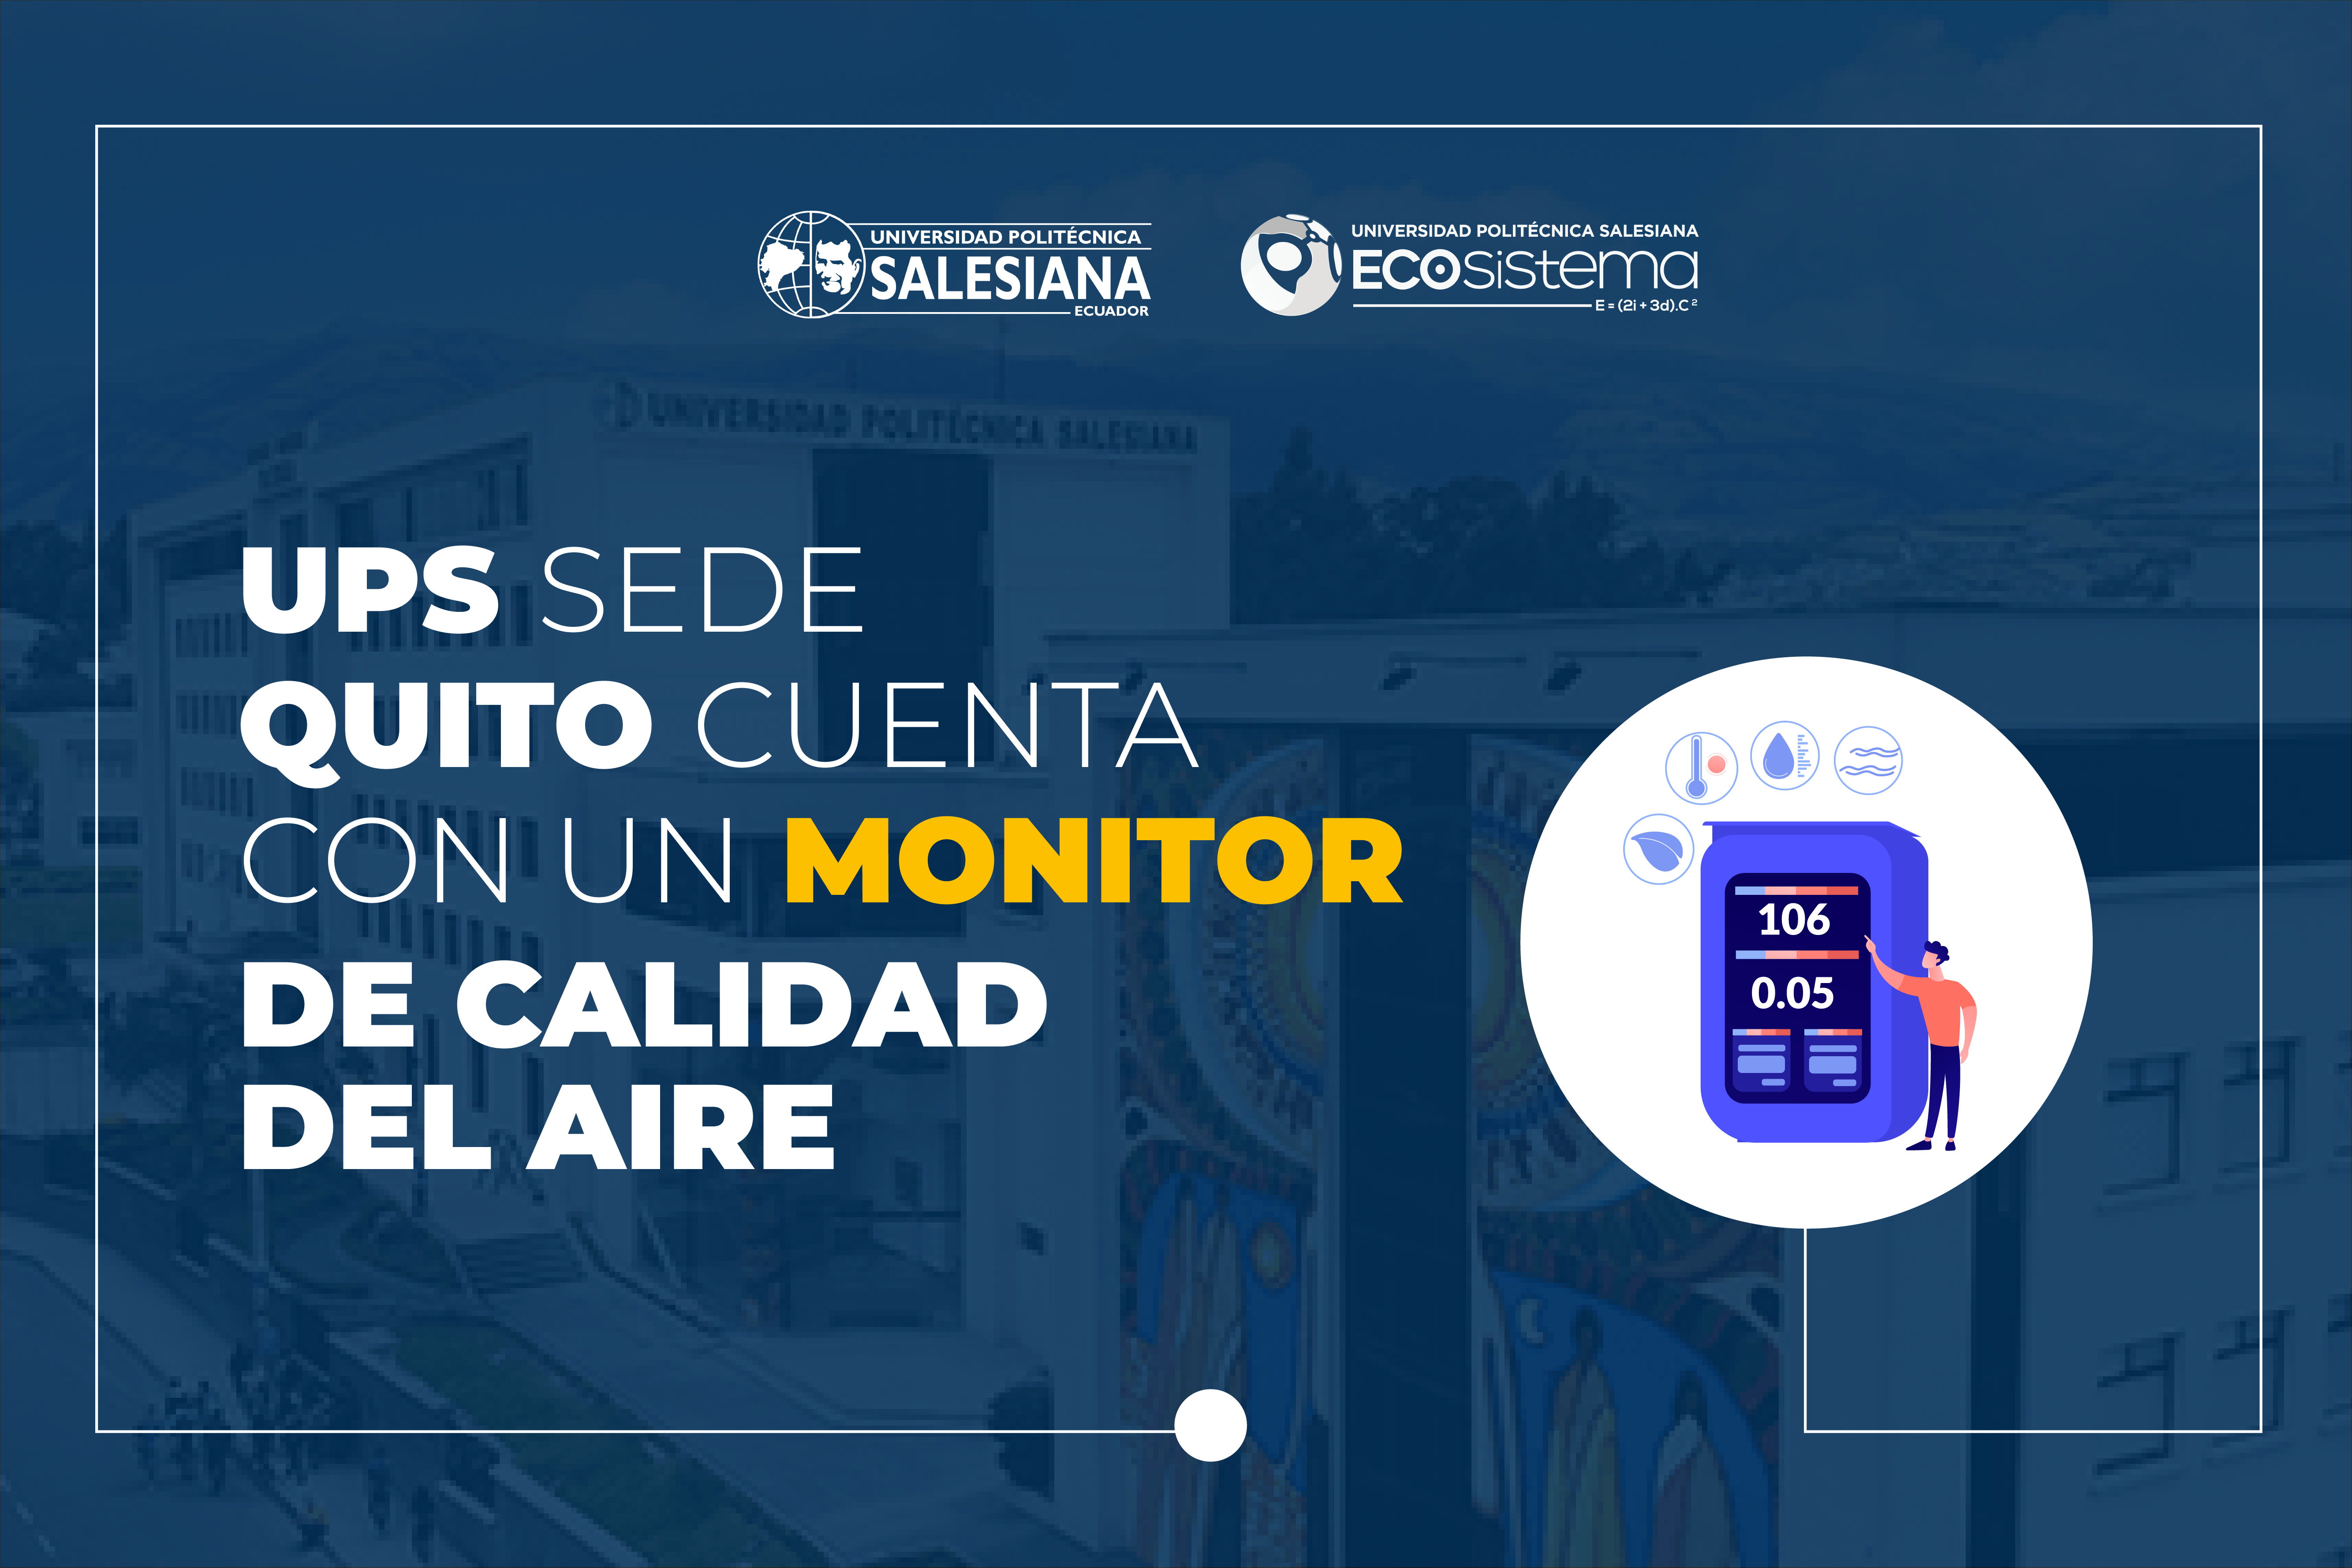 La UPS sede Quito cuenta con un monitor de calidad del aire